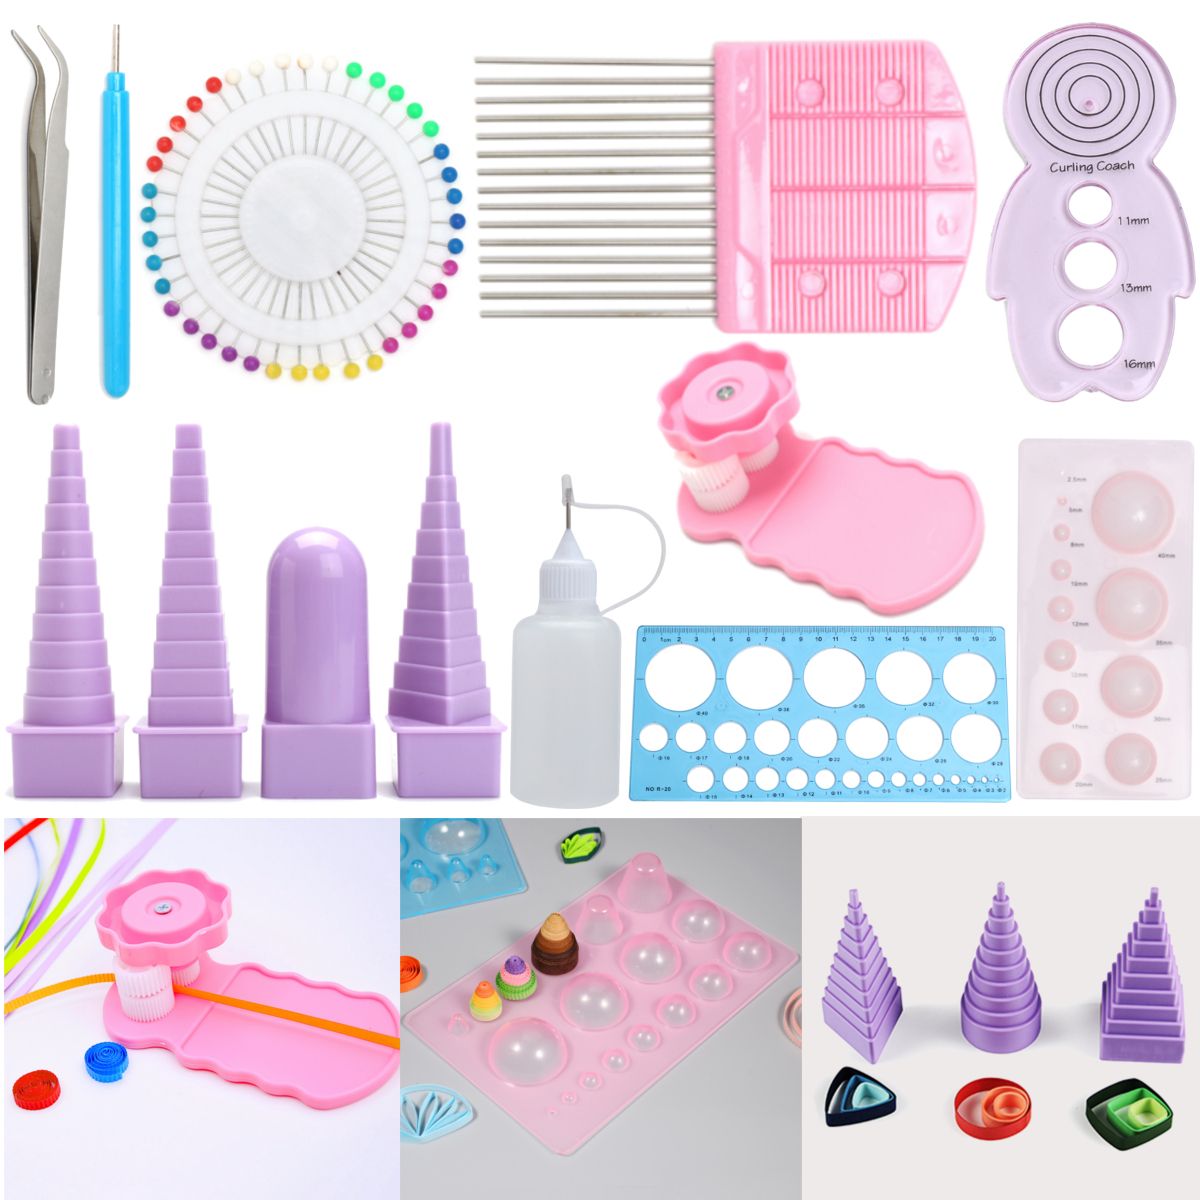 11pcs-Paper-Quilling-Board-Mould-Crimper-Comb-Ruler-Pins-Tools-Set-DIY-Craft-Kit-1191608